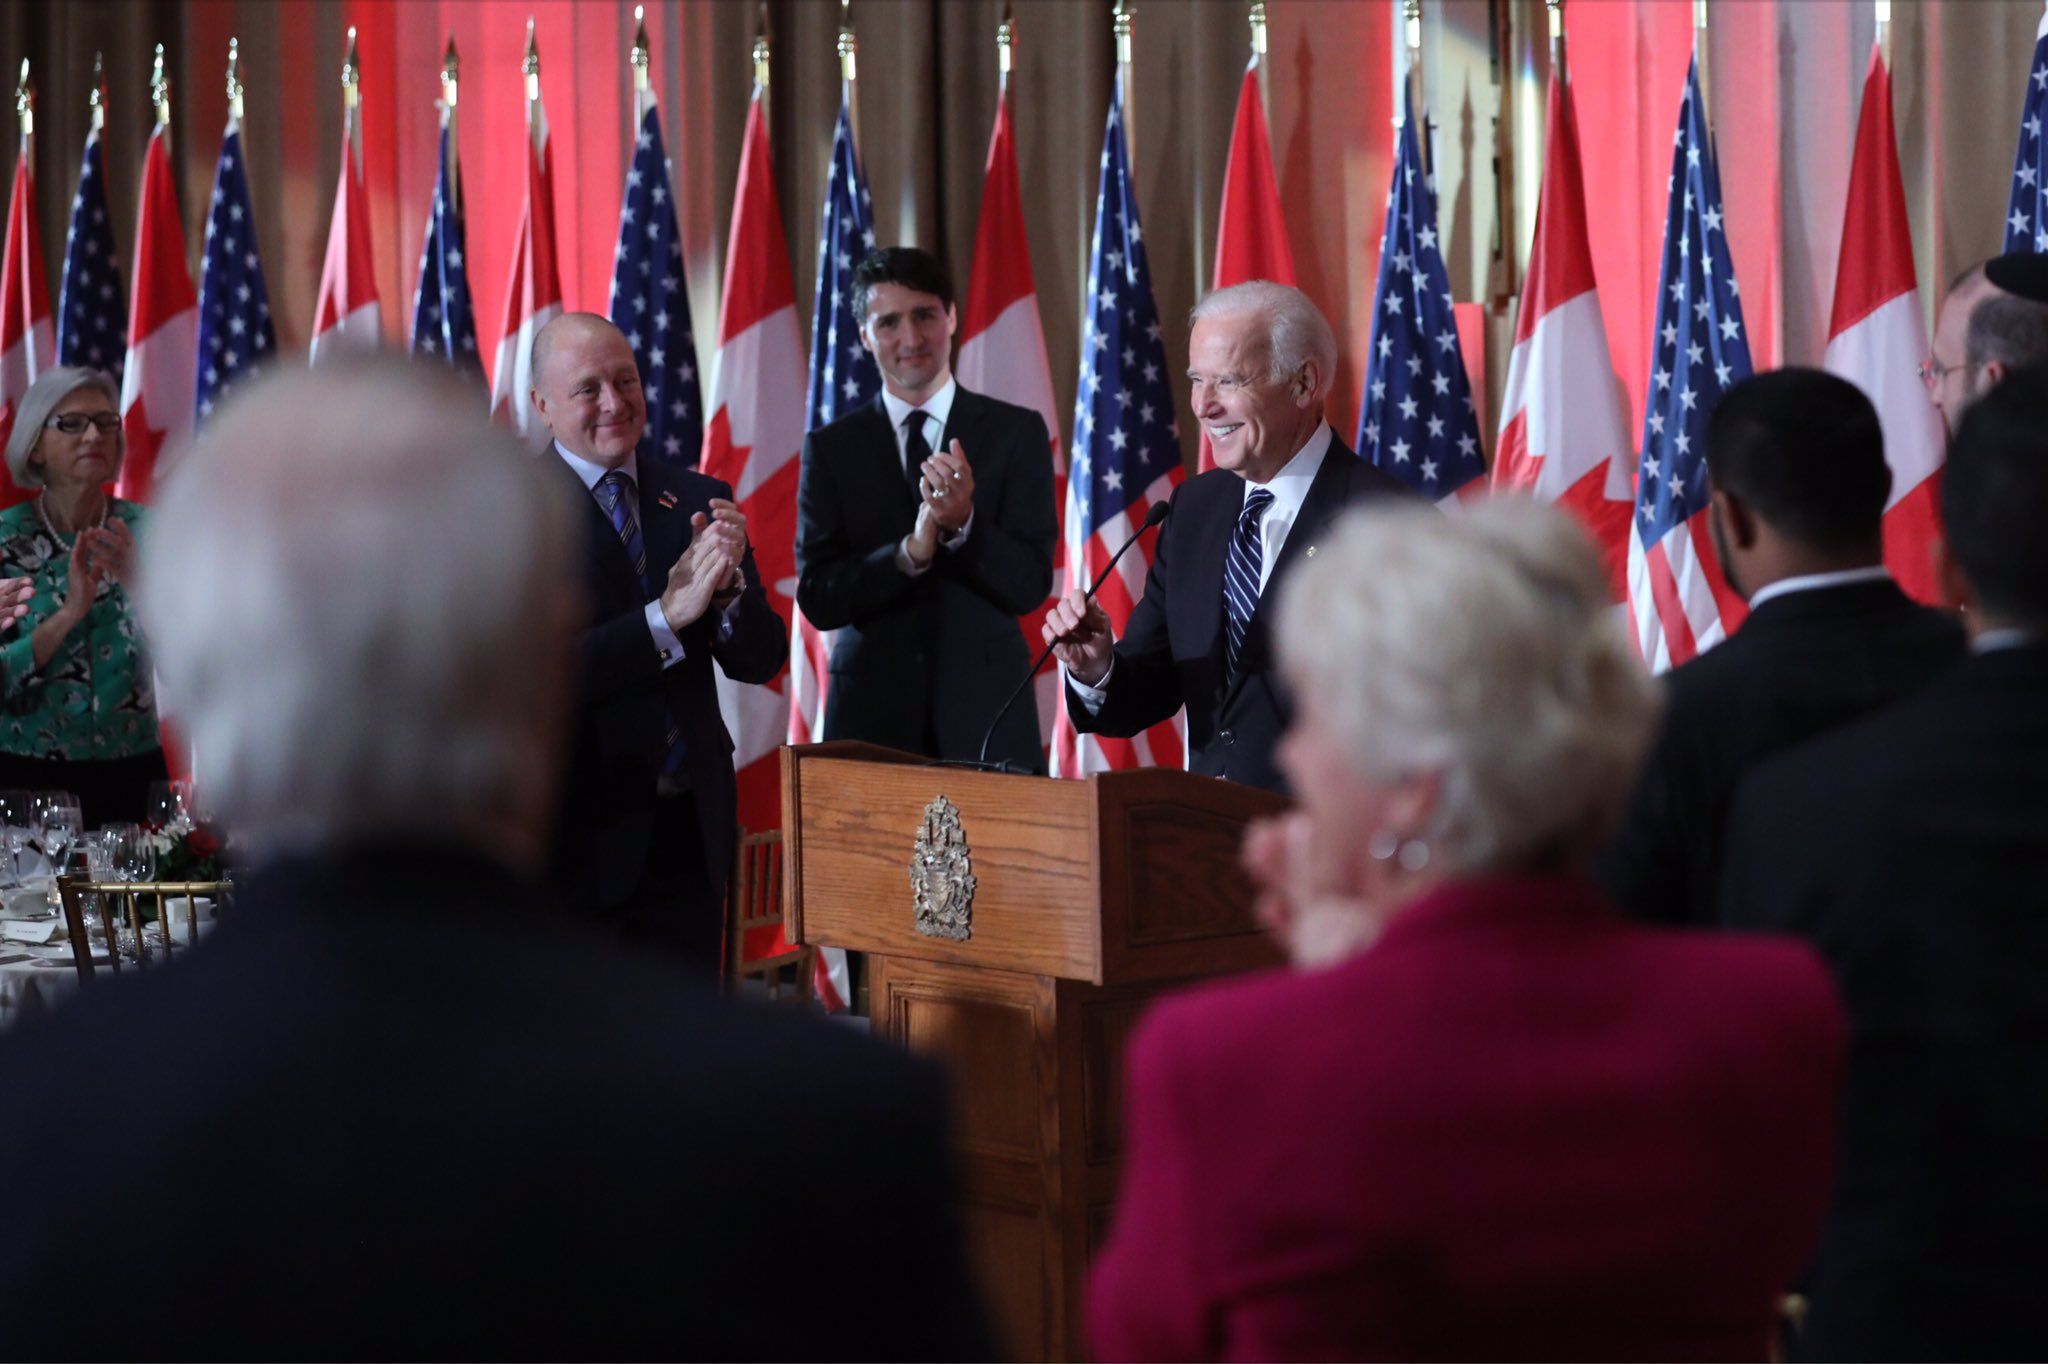 Joe Biden plans to scrap $8 billion Keystone XL pipeline permit: Canadian media